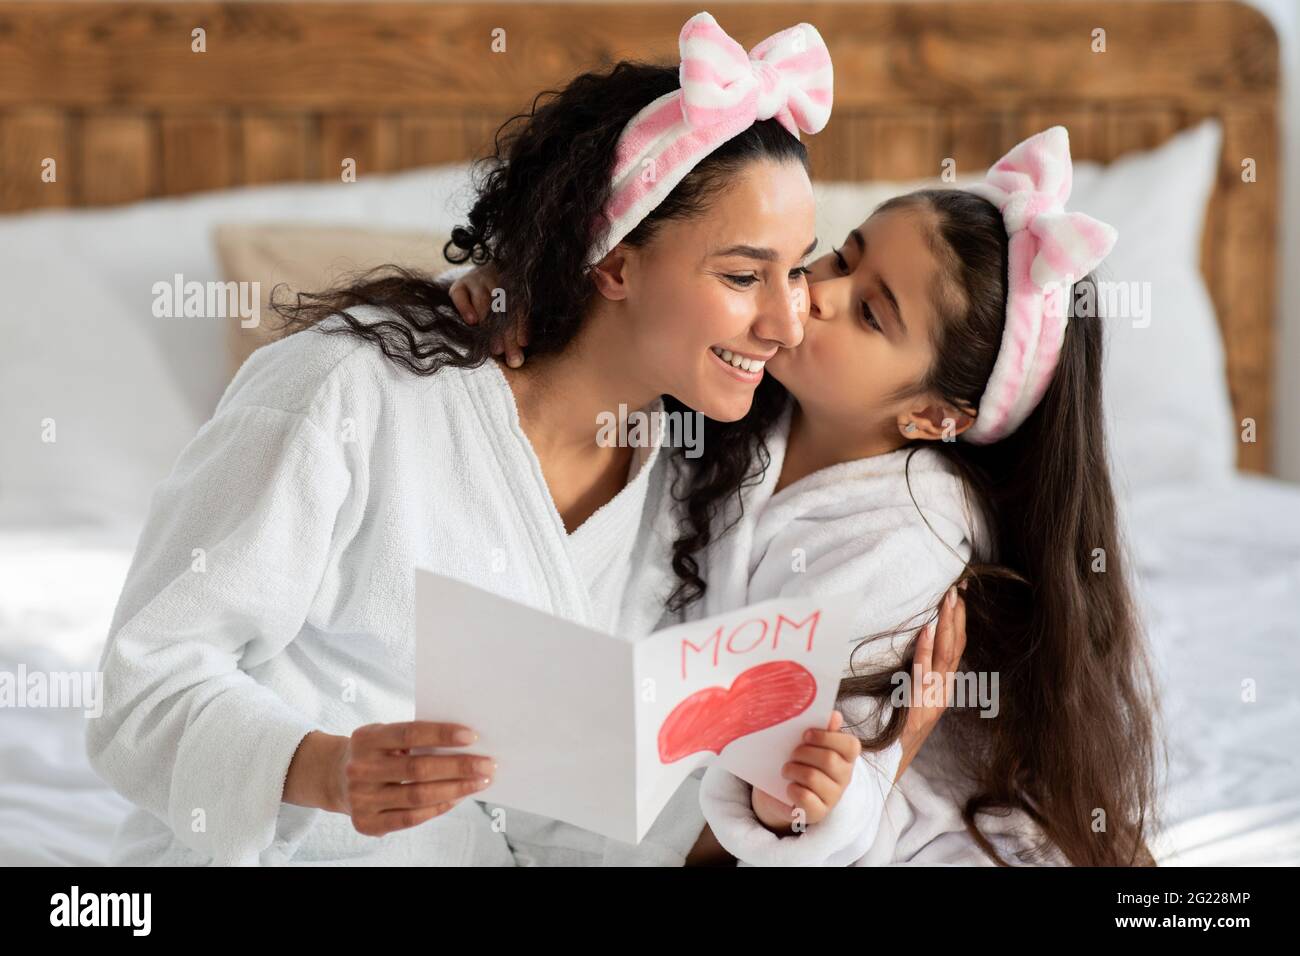 Jolie fille embrassant sa belle maman, célébrant la Journée internationale des mères Banque D'Images